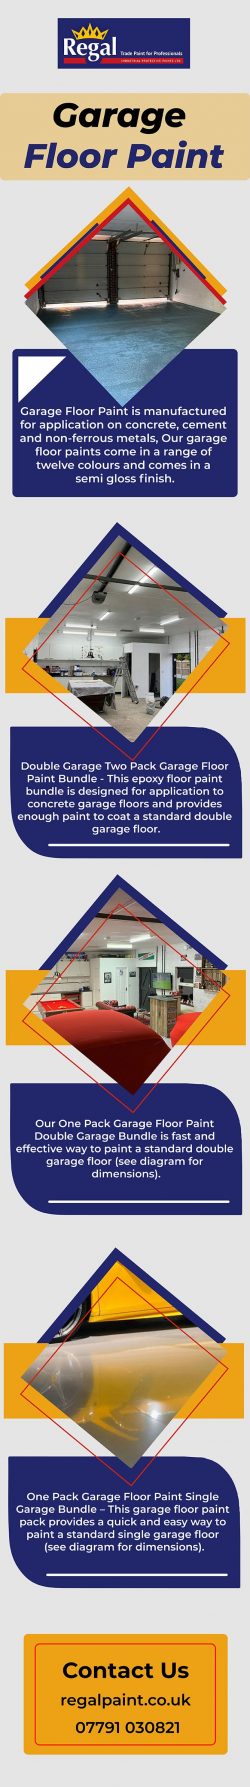 Garage Floor Paint – Buy The Best Quality Floor Paint